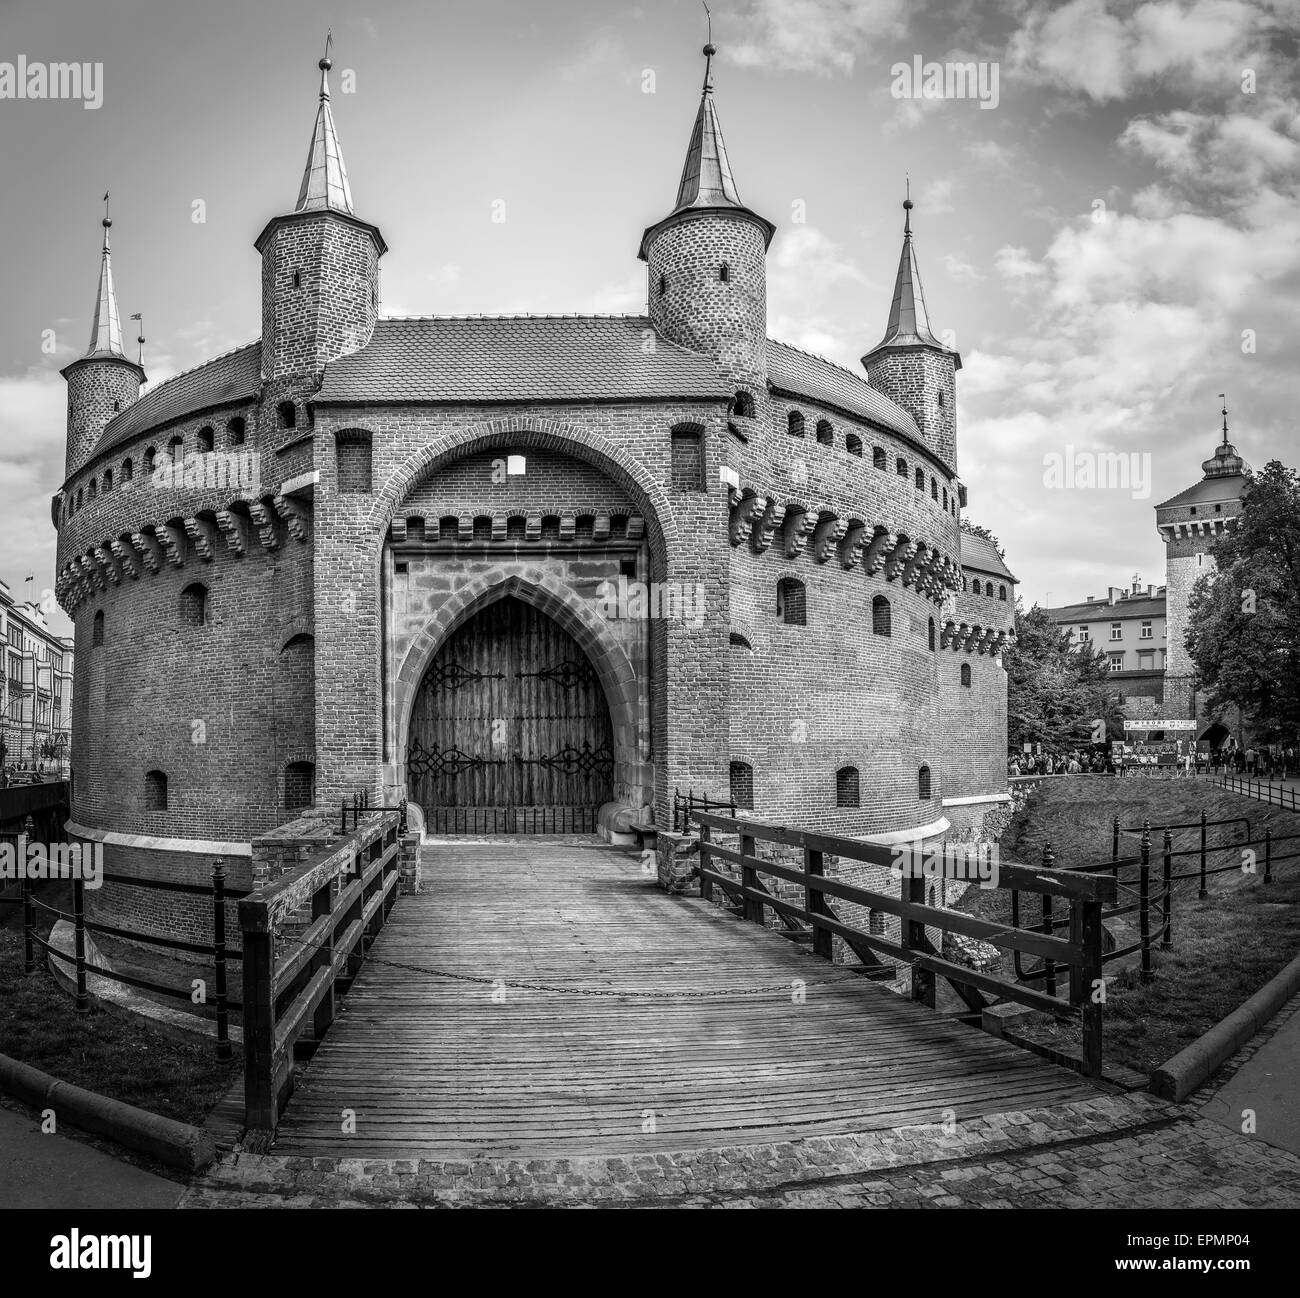 Cracovie, Pologne - 02 MAI 2015 : noir et blanc photo de Barbakan forteresse à Cracovie Cracovie, Pologne ( ) Banque D'Images